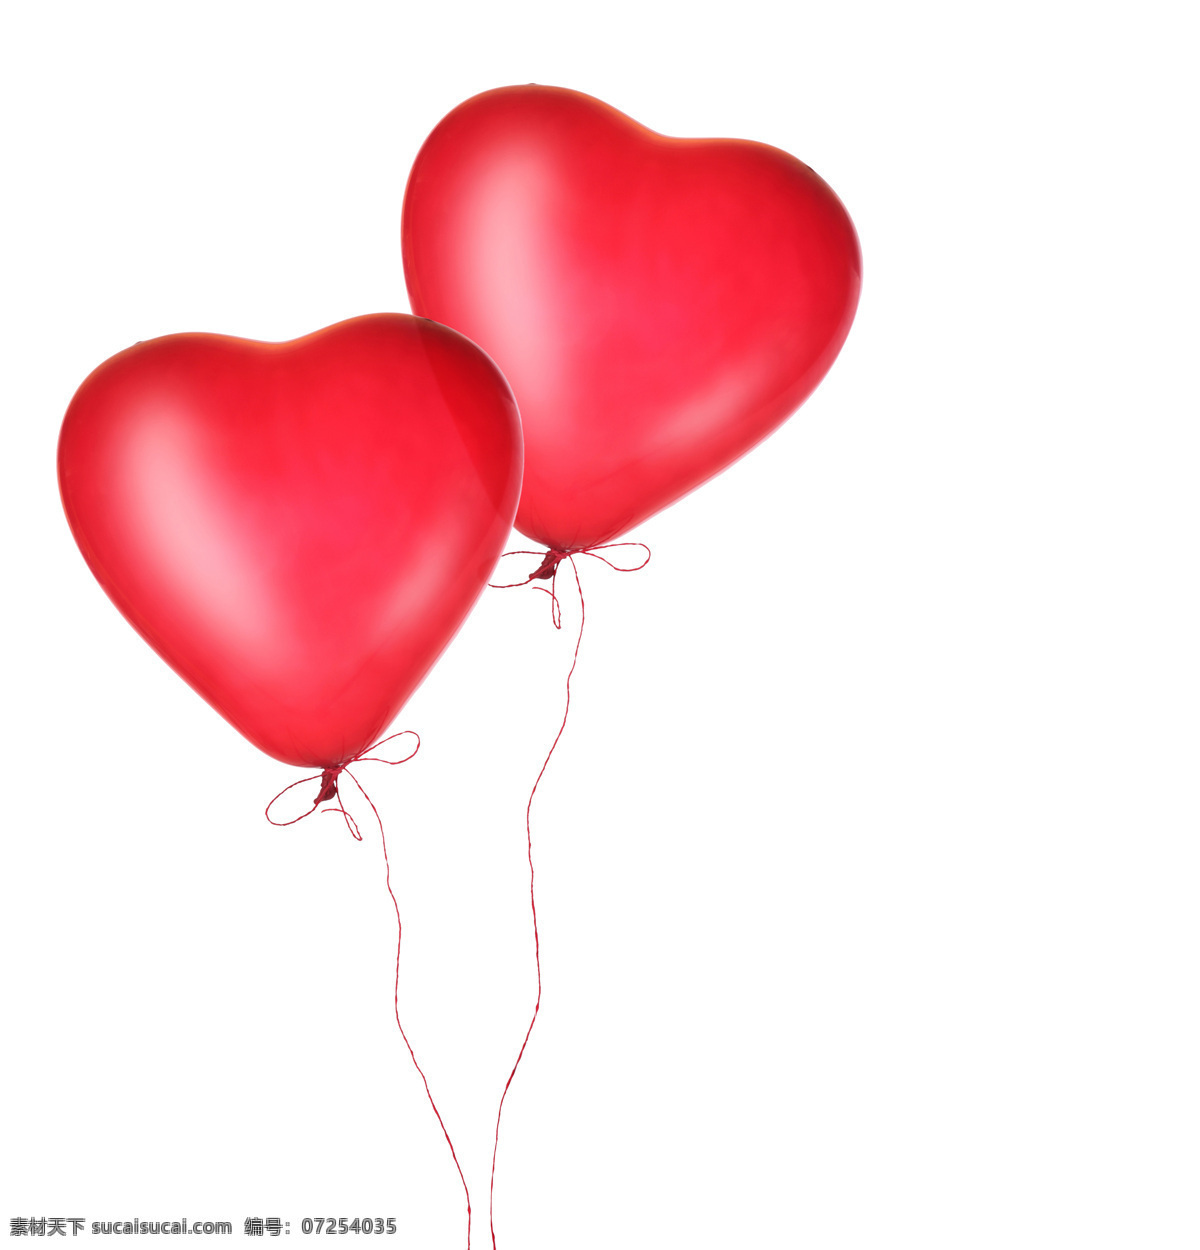 红色心形气球 心形 桃心气球 爱心气球 情人节素材 情人节背景 其他类别 生活百科 白色